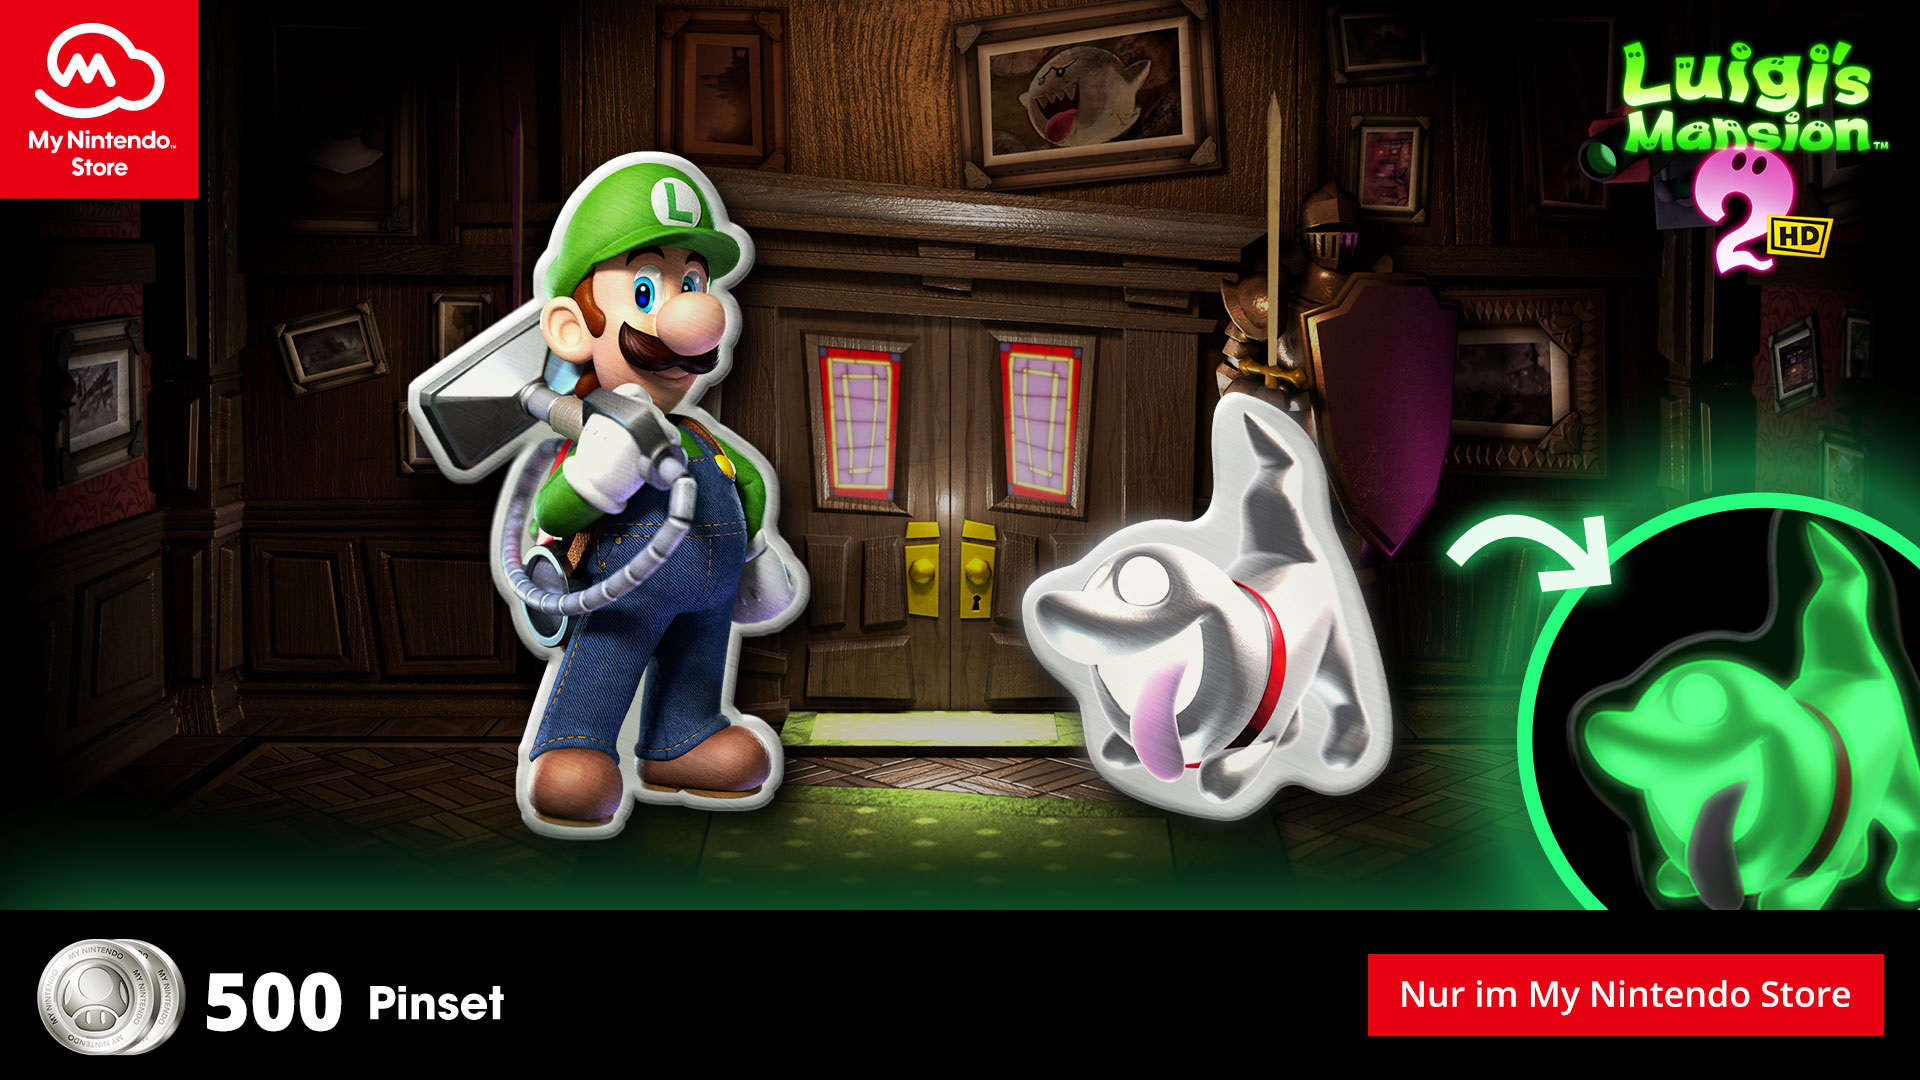 Nintendo: Luigi’s Mansion 2 HD Pin-Set als neue Belohnung verfügbar